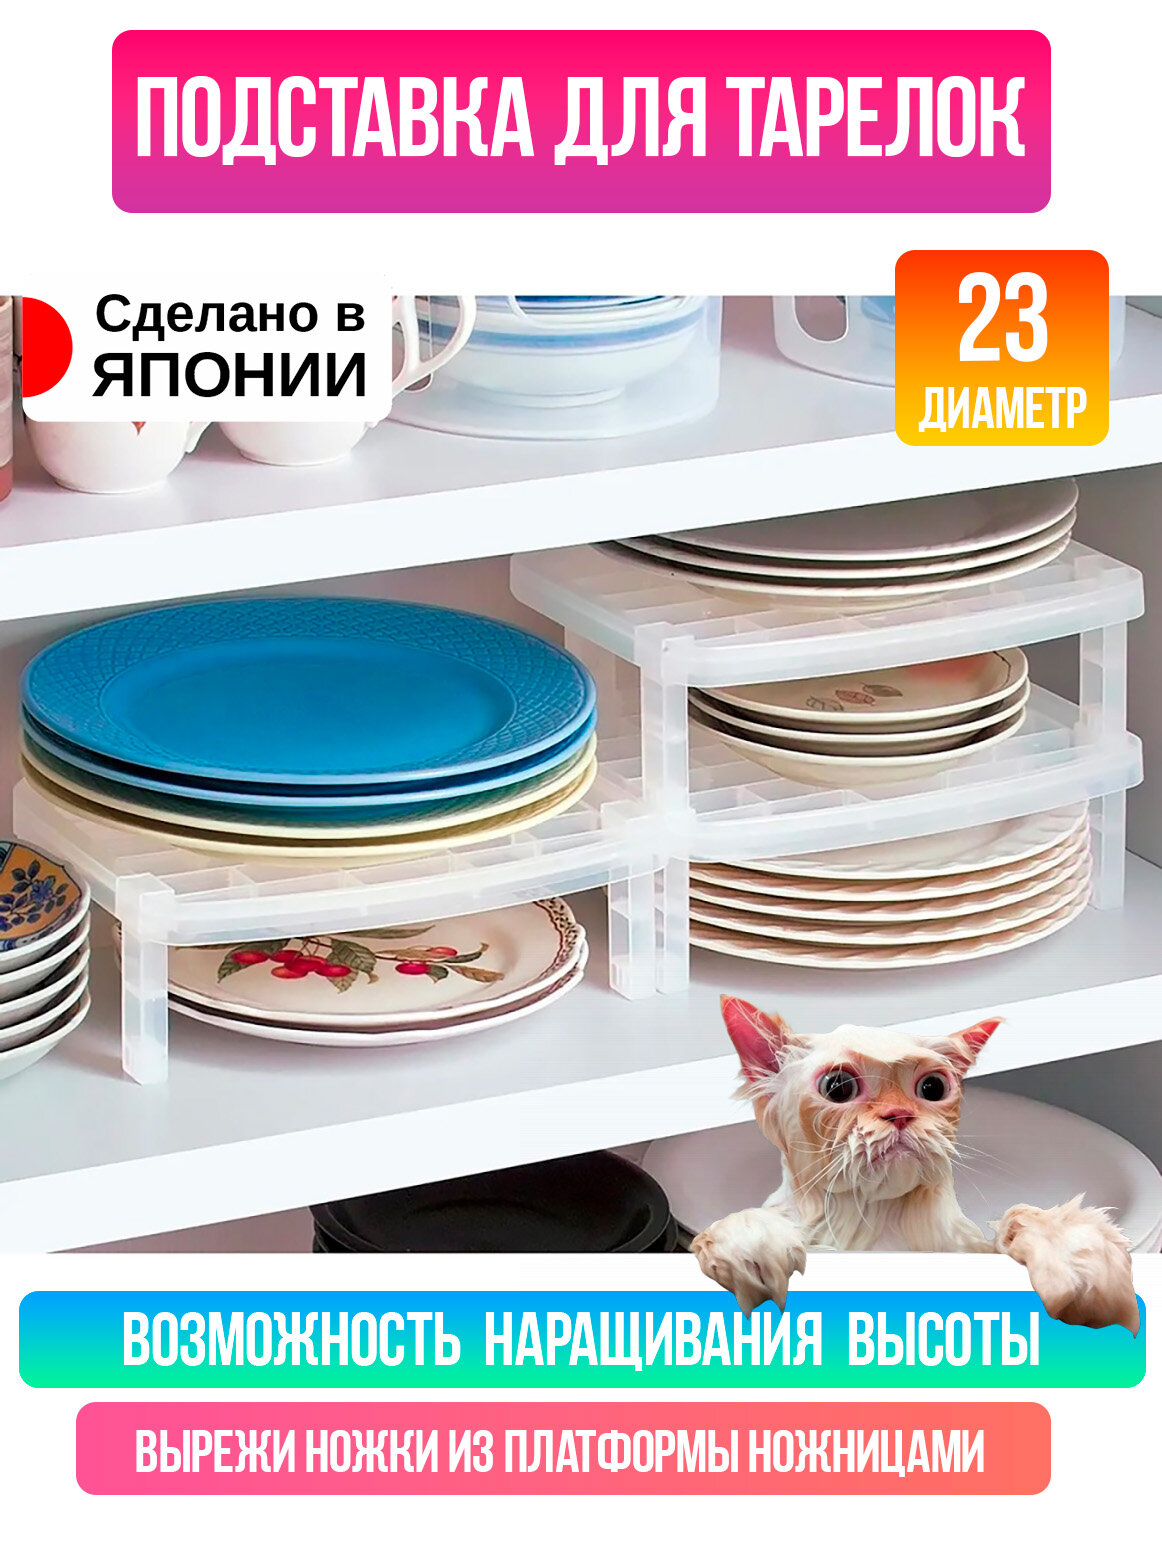 Органайзер для кухни / Посудосушка / Полка / Подставка органайзер для тарелок и чашек 26*21,1*8,2 см. D-5369. Sanada